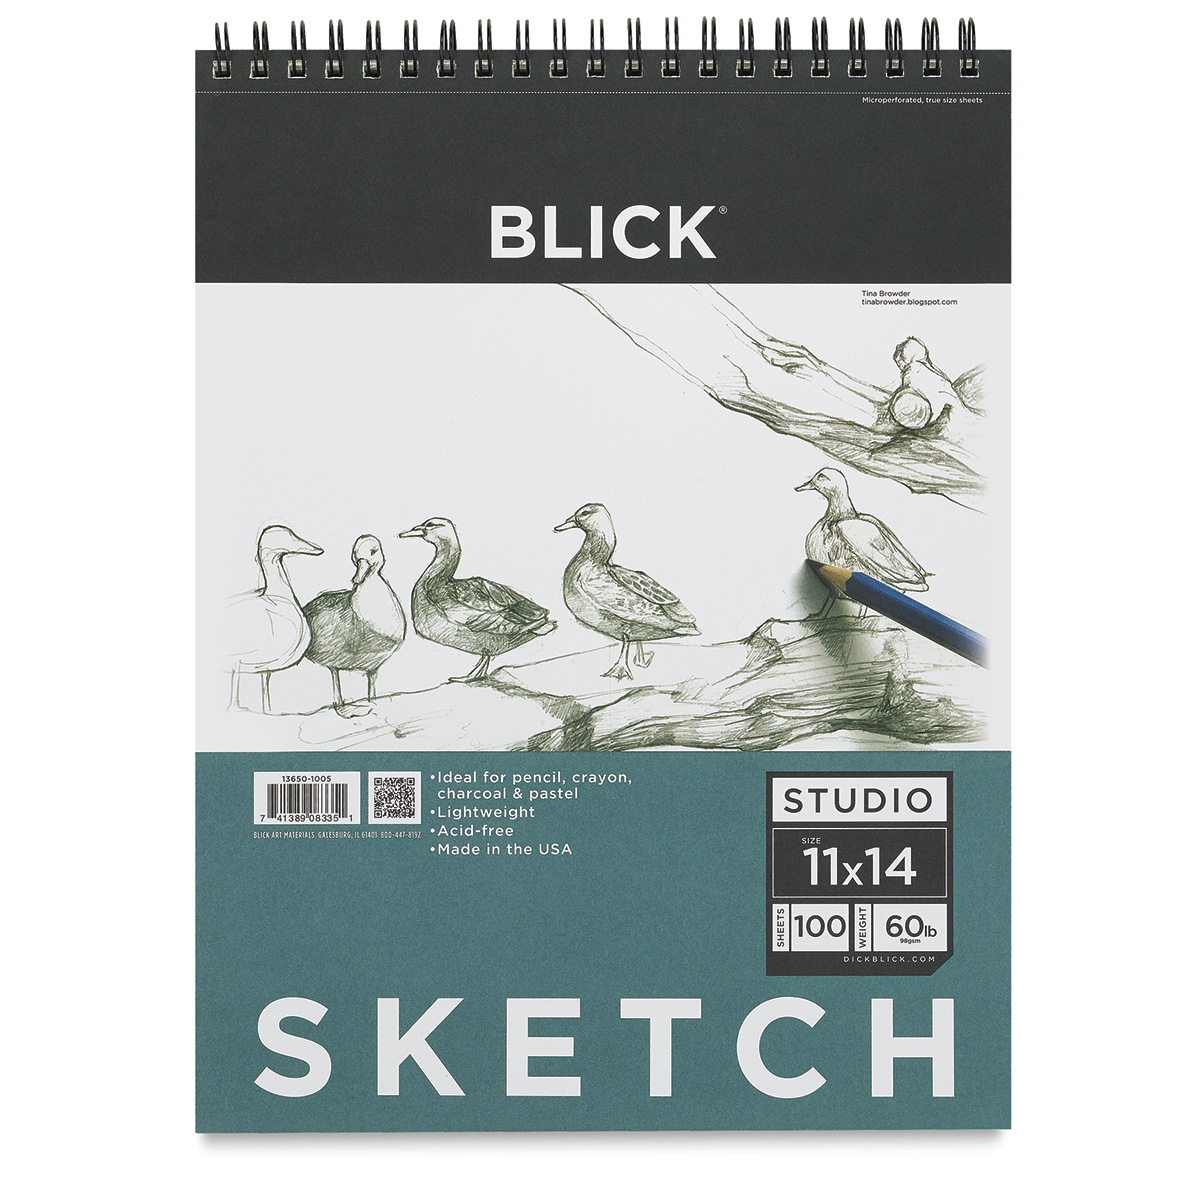 H & B Sketch Book 9X12, Drawing Pad 100-Sheets, Sketching Book